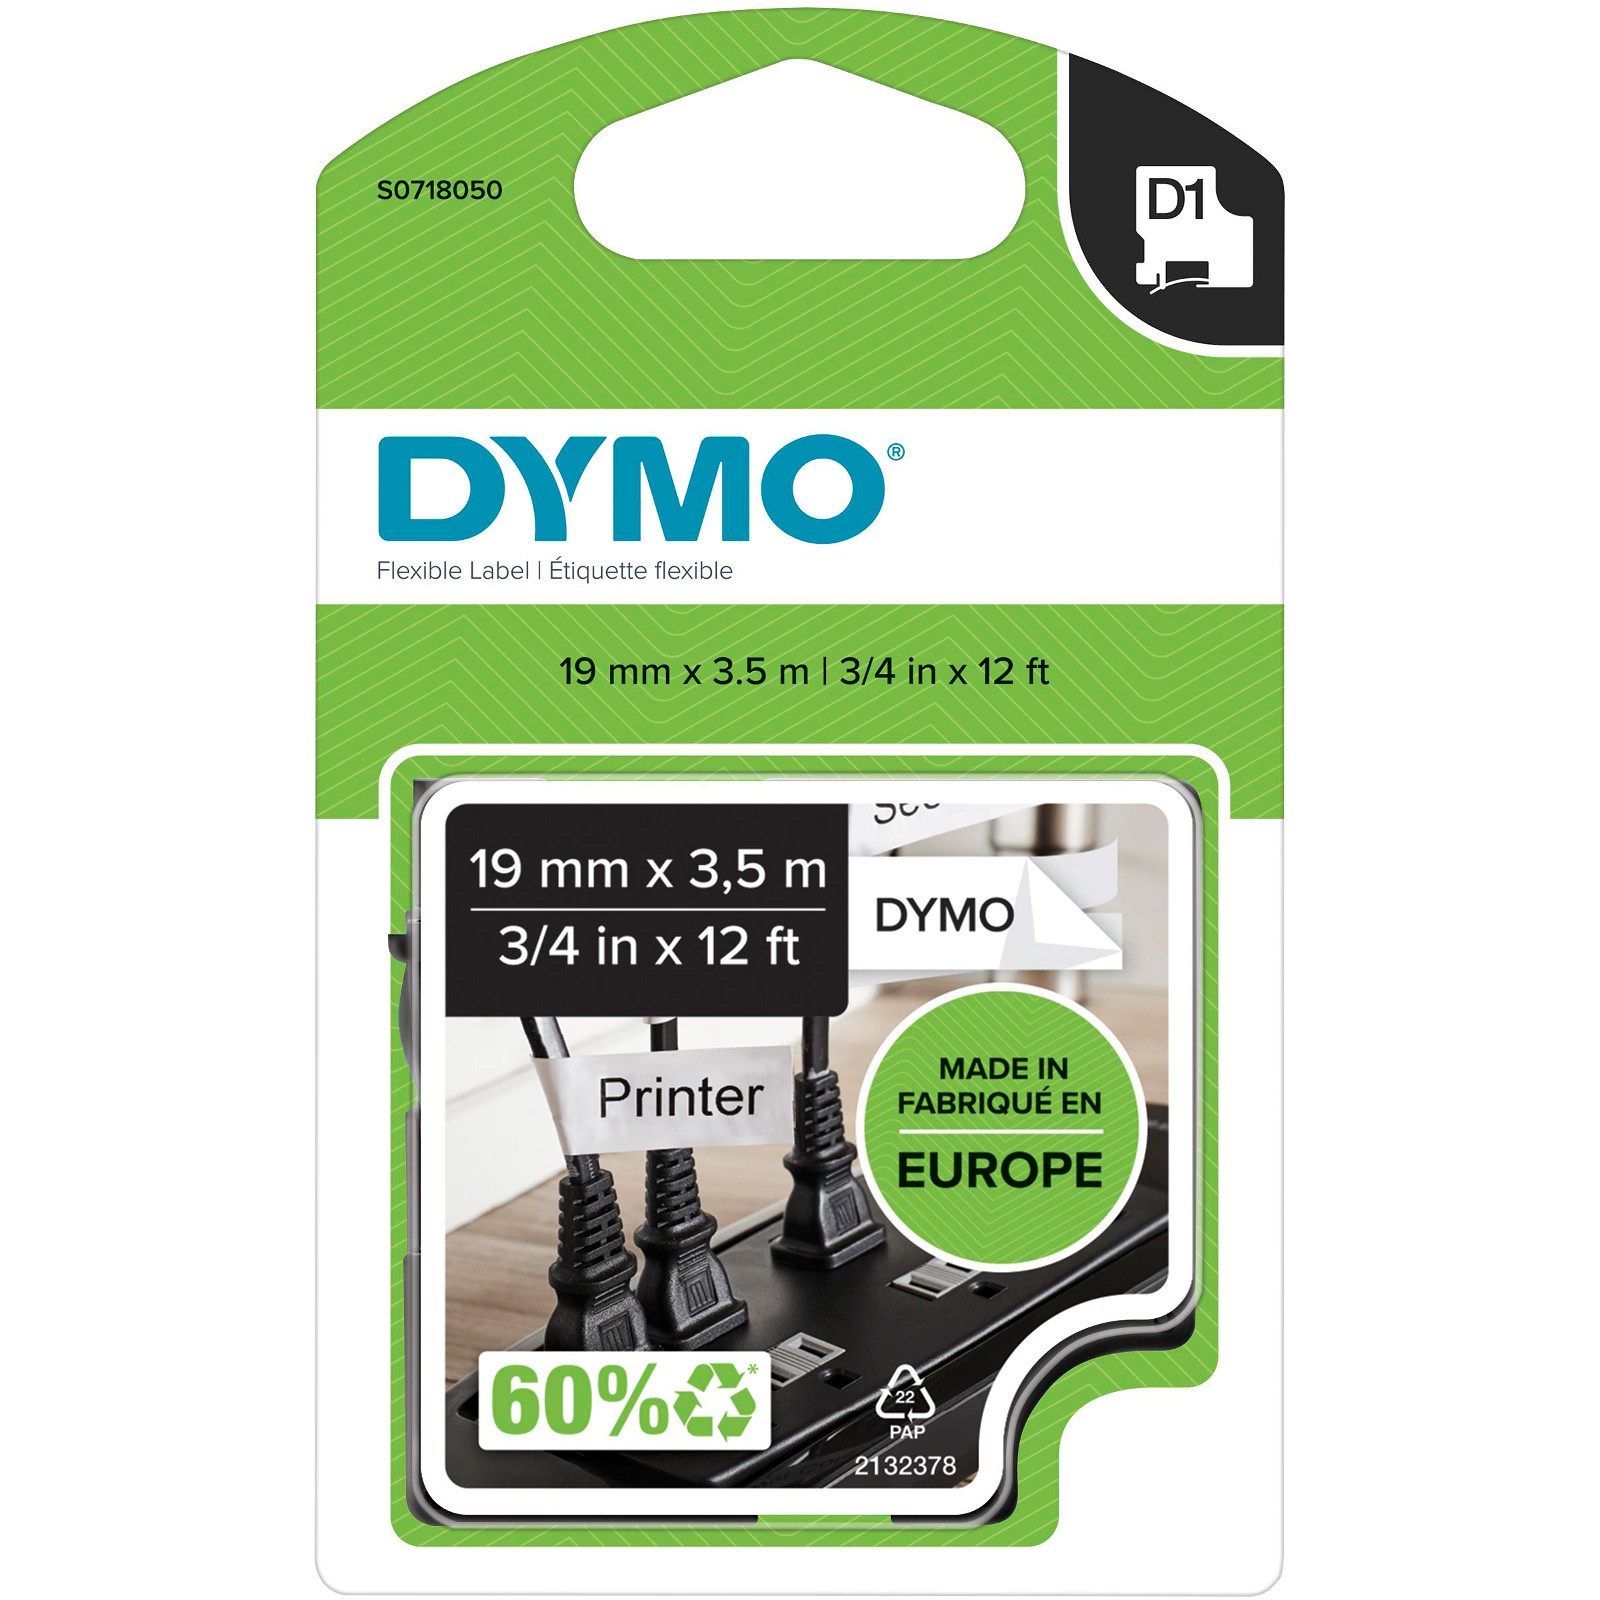 Dymo D1 polyester tape sort/hvid 19mmx3,5m